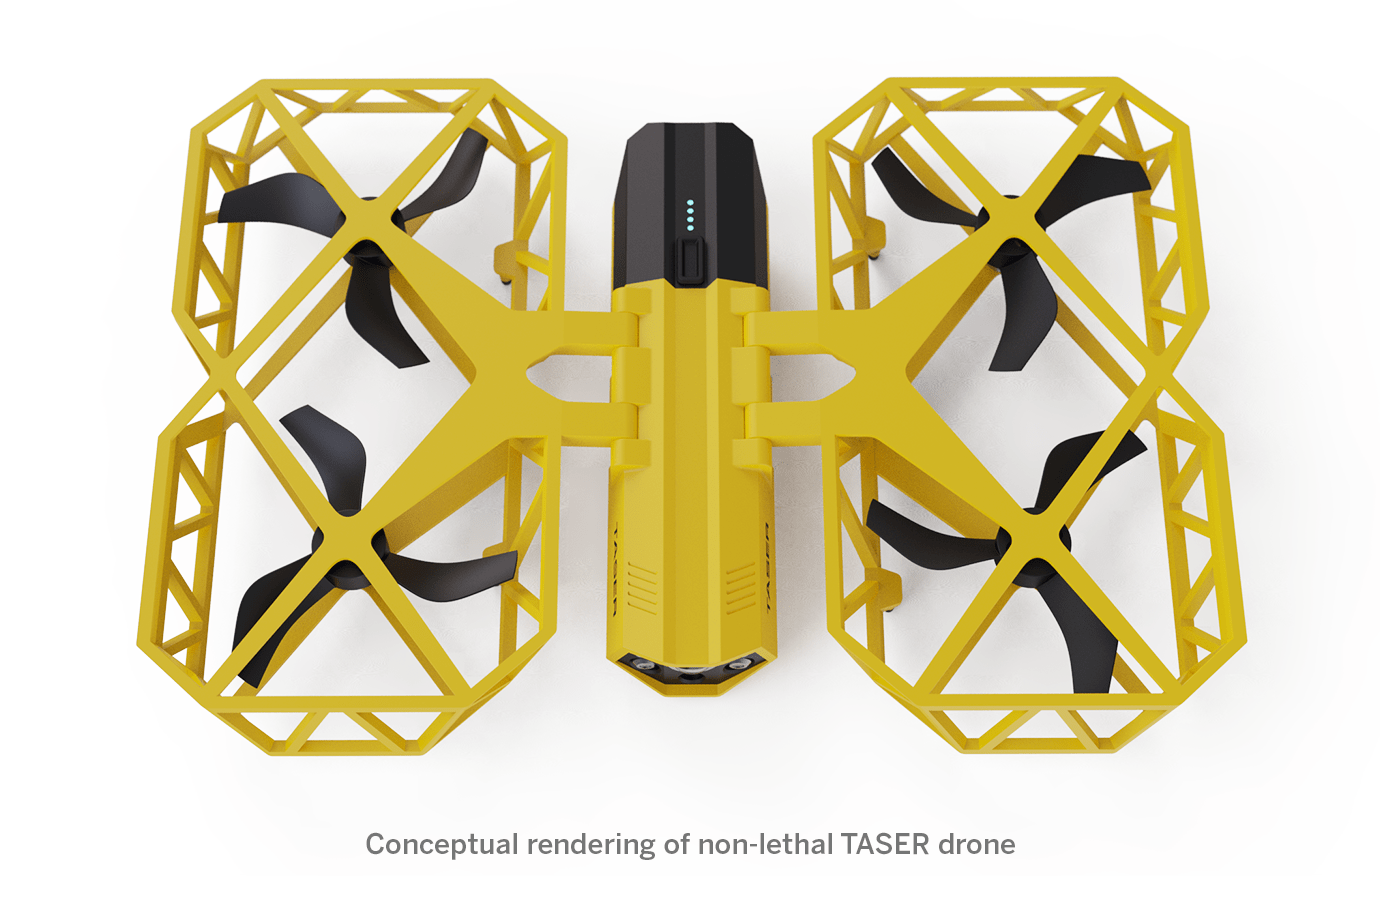 axon taser stun gun drone